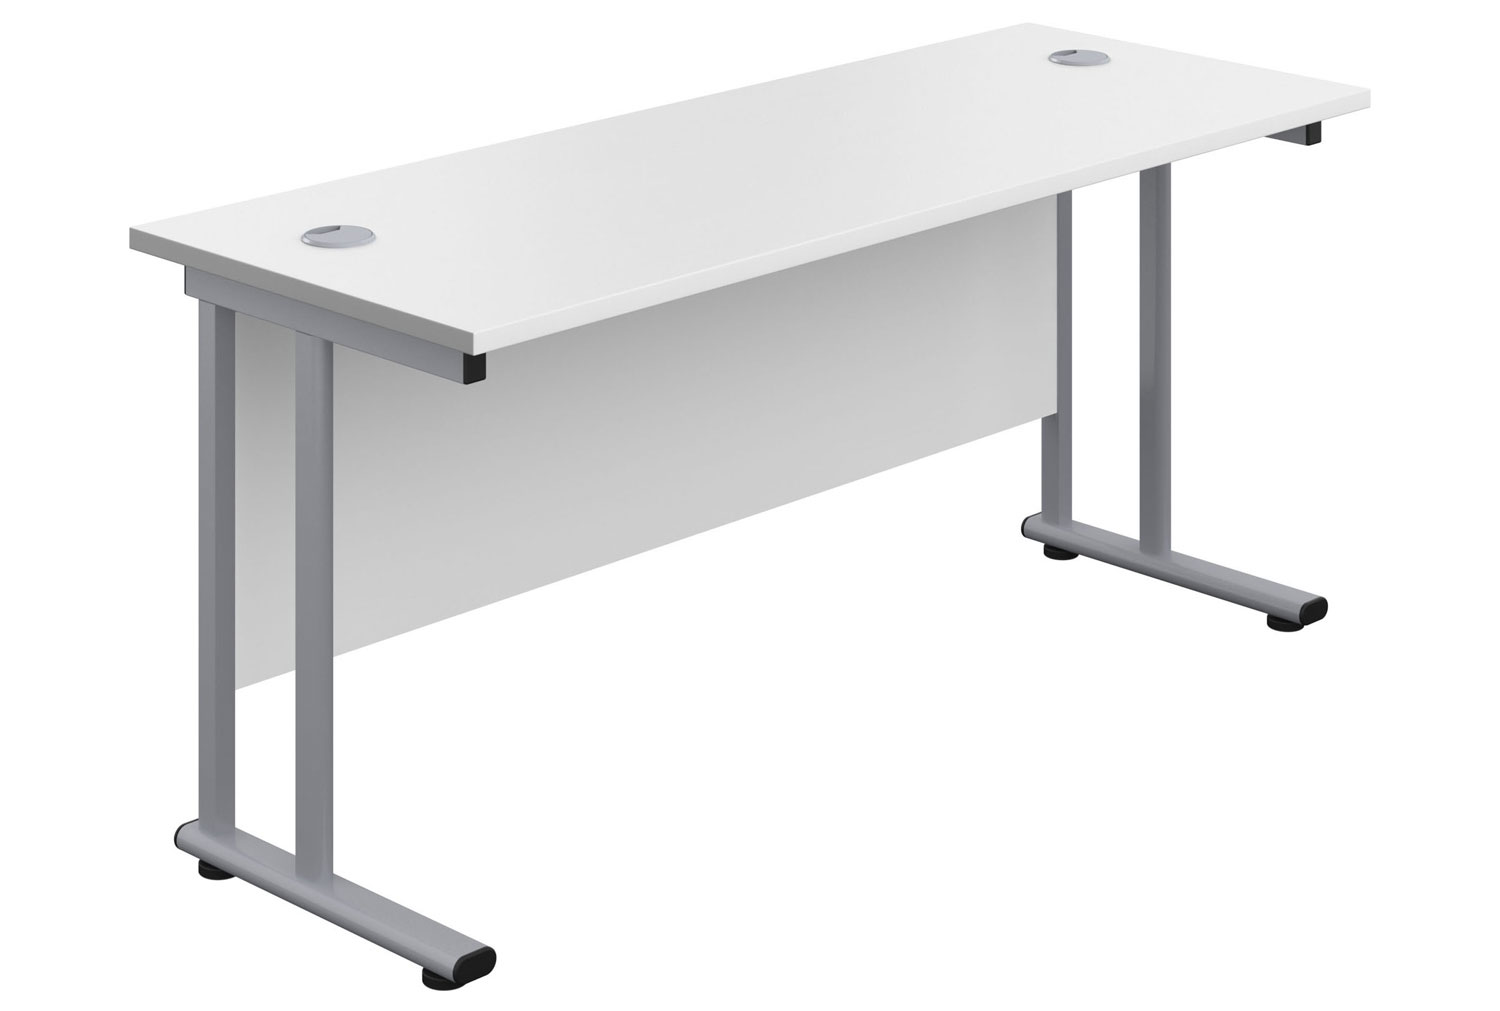 Impulse Narrow Rectangular Office Desk, 120wx60dx73h (cm), Silver Frame, White